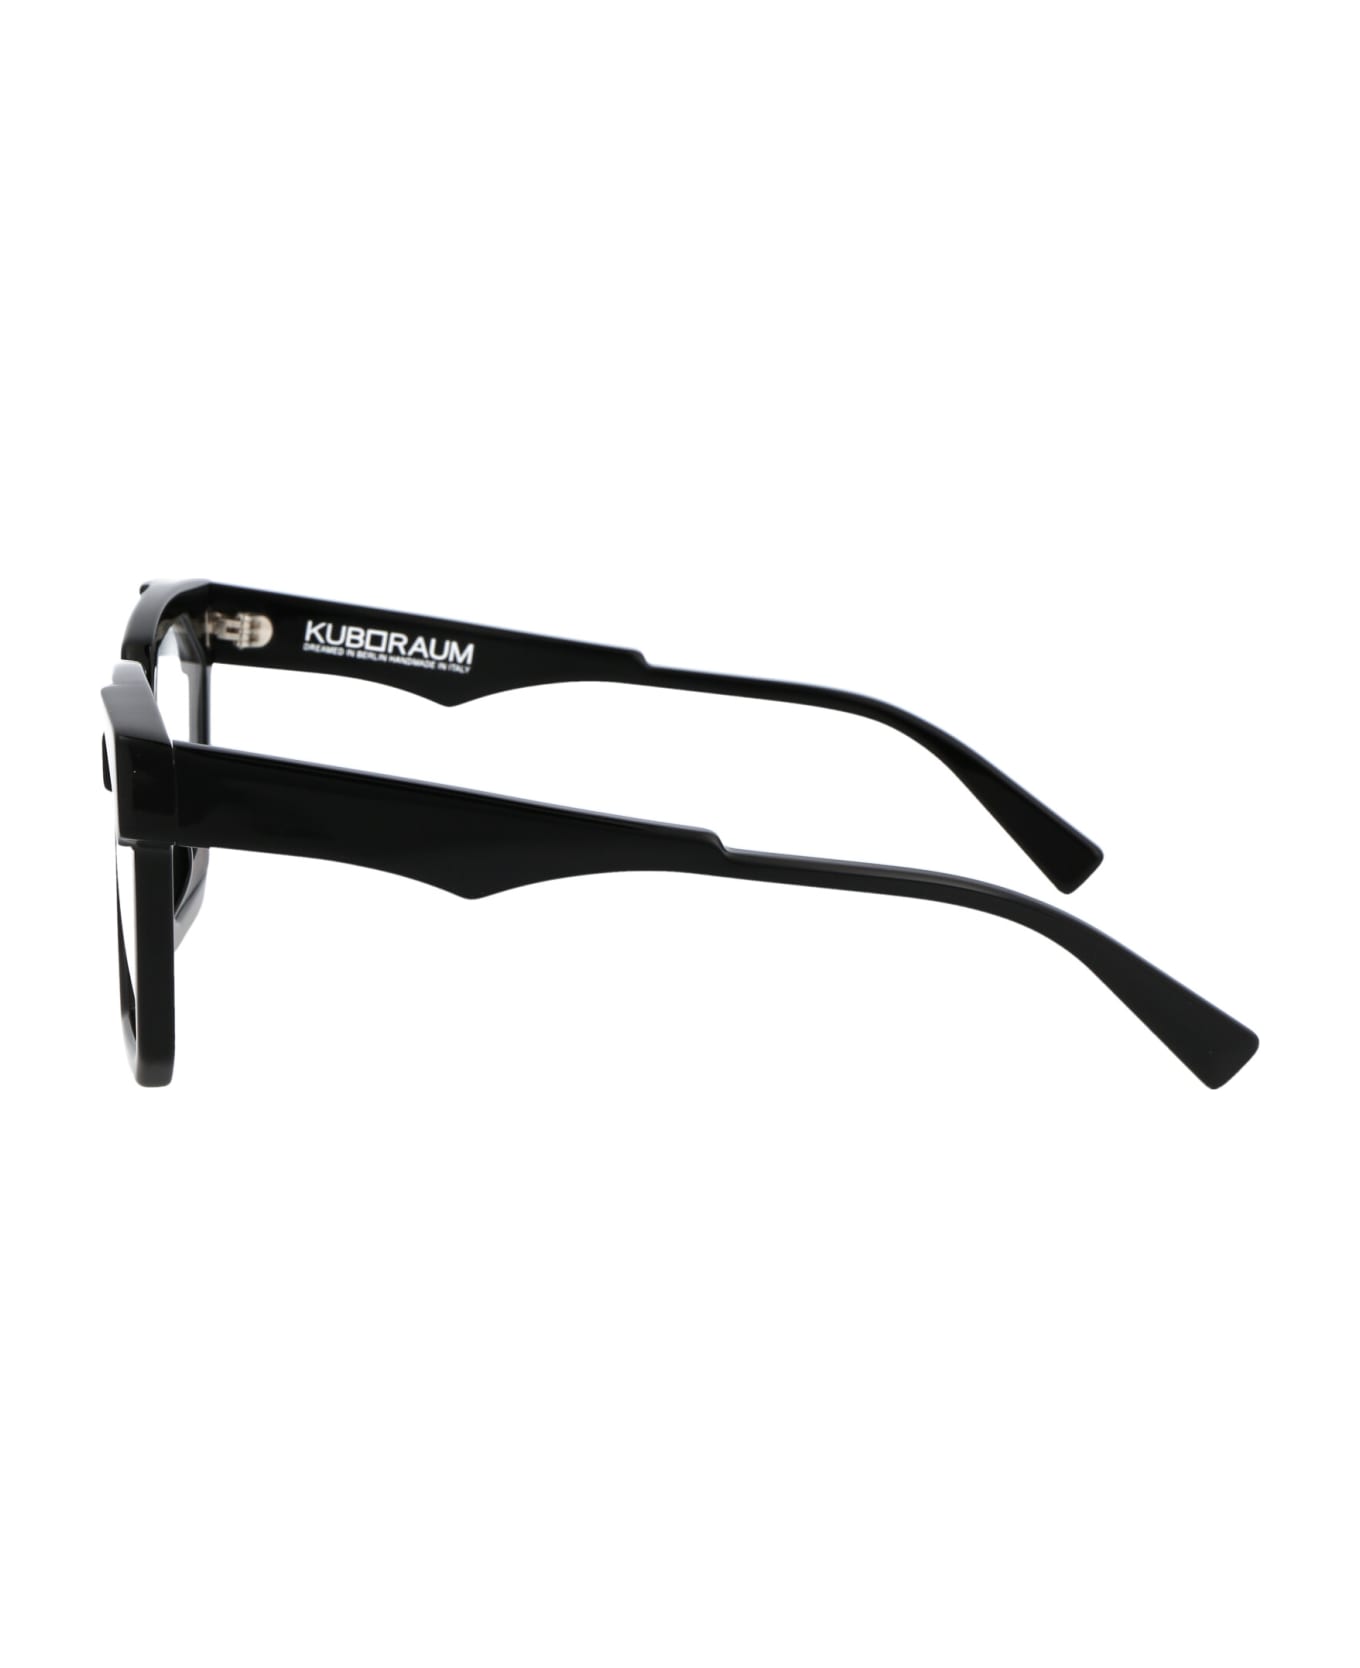 Kuboraum Maske K30 Glasses - BS BLACK アイウェア